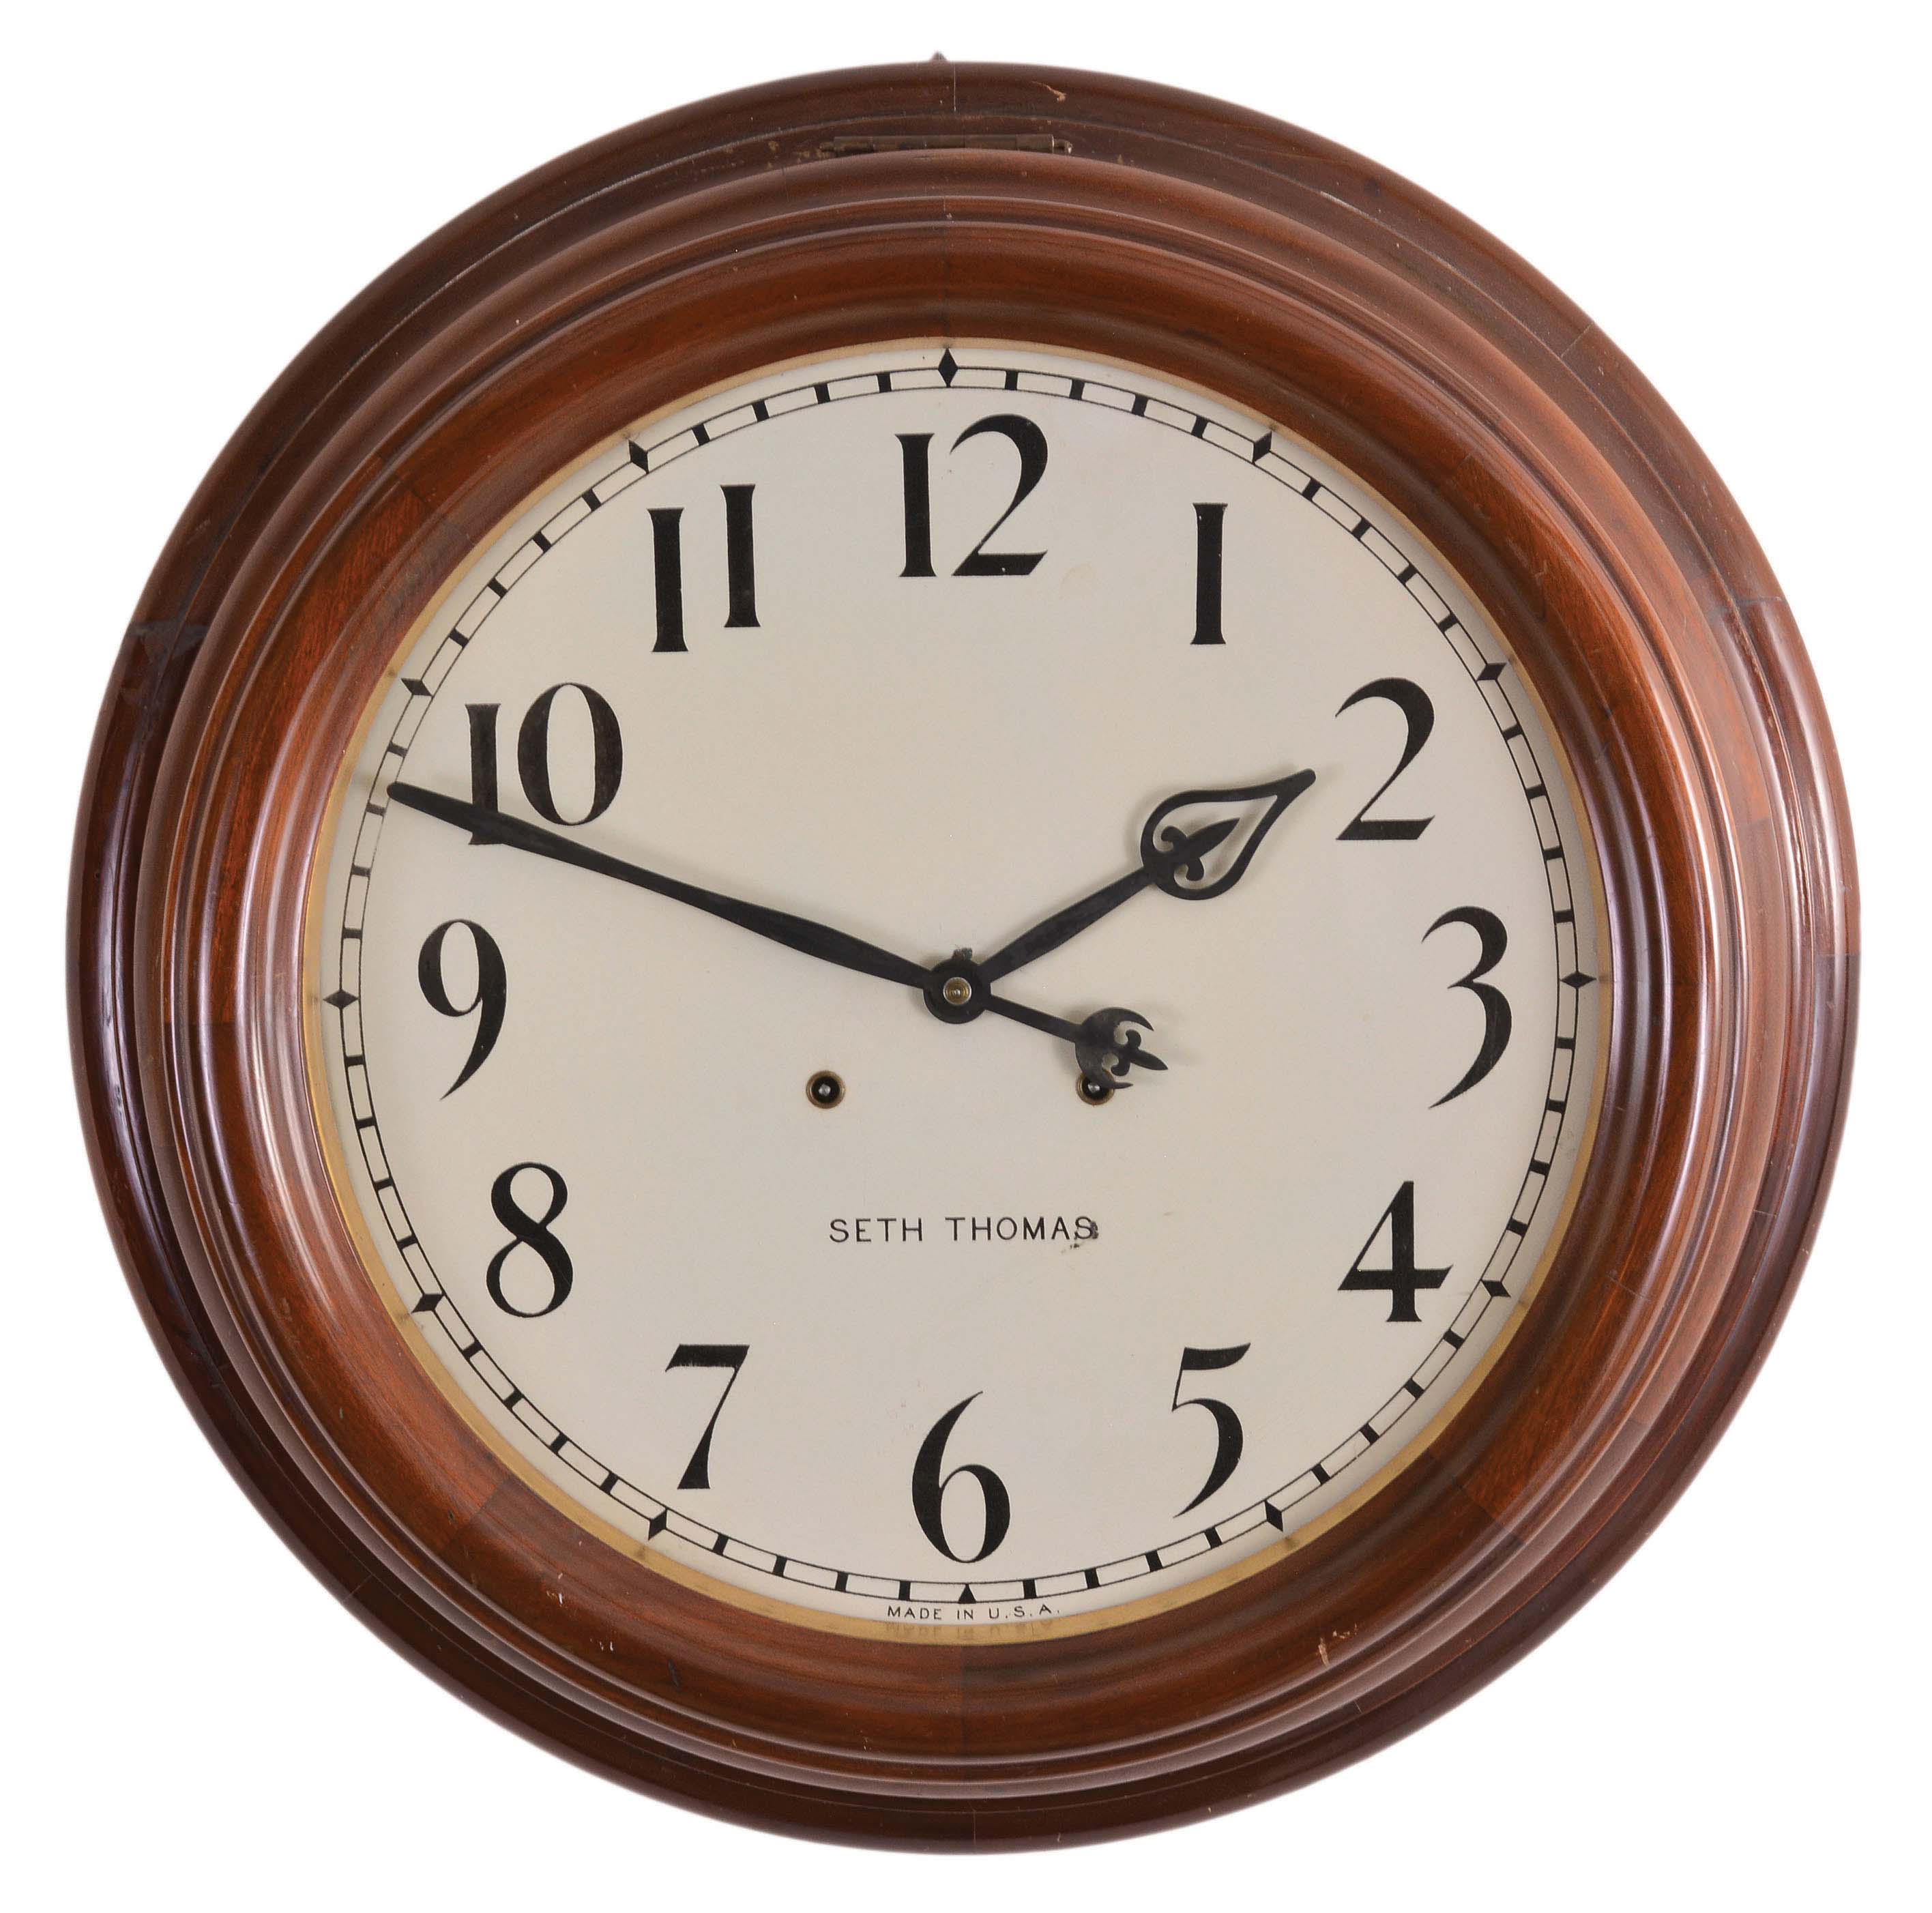 Часы настенные 50 см. Seth Thomas часы настенные. Швейцарские настенные часы. Настенные часы, коричневый. Часы механические настенные.